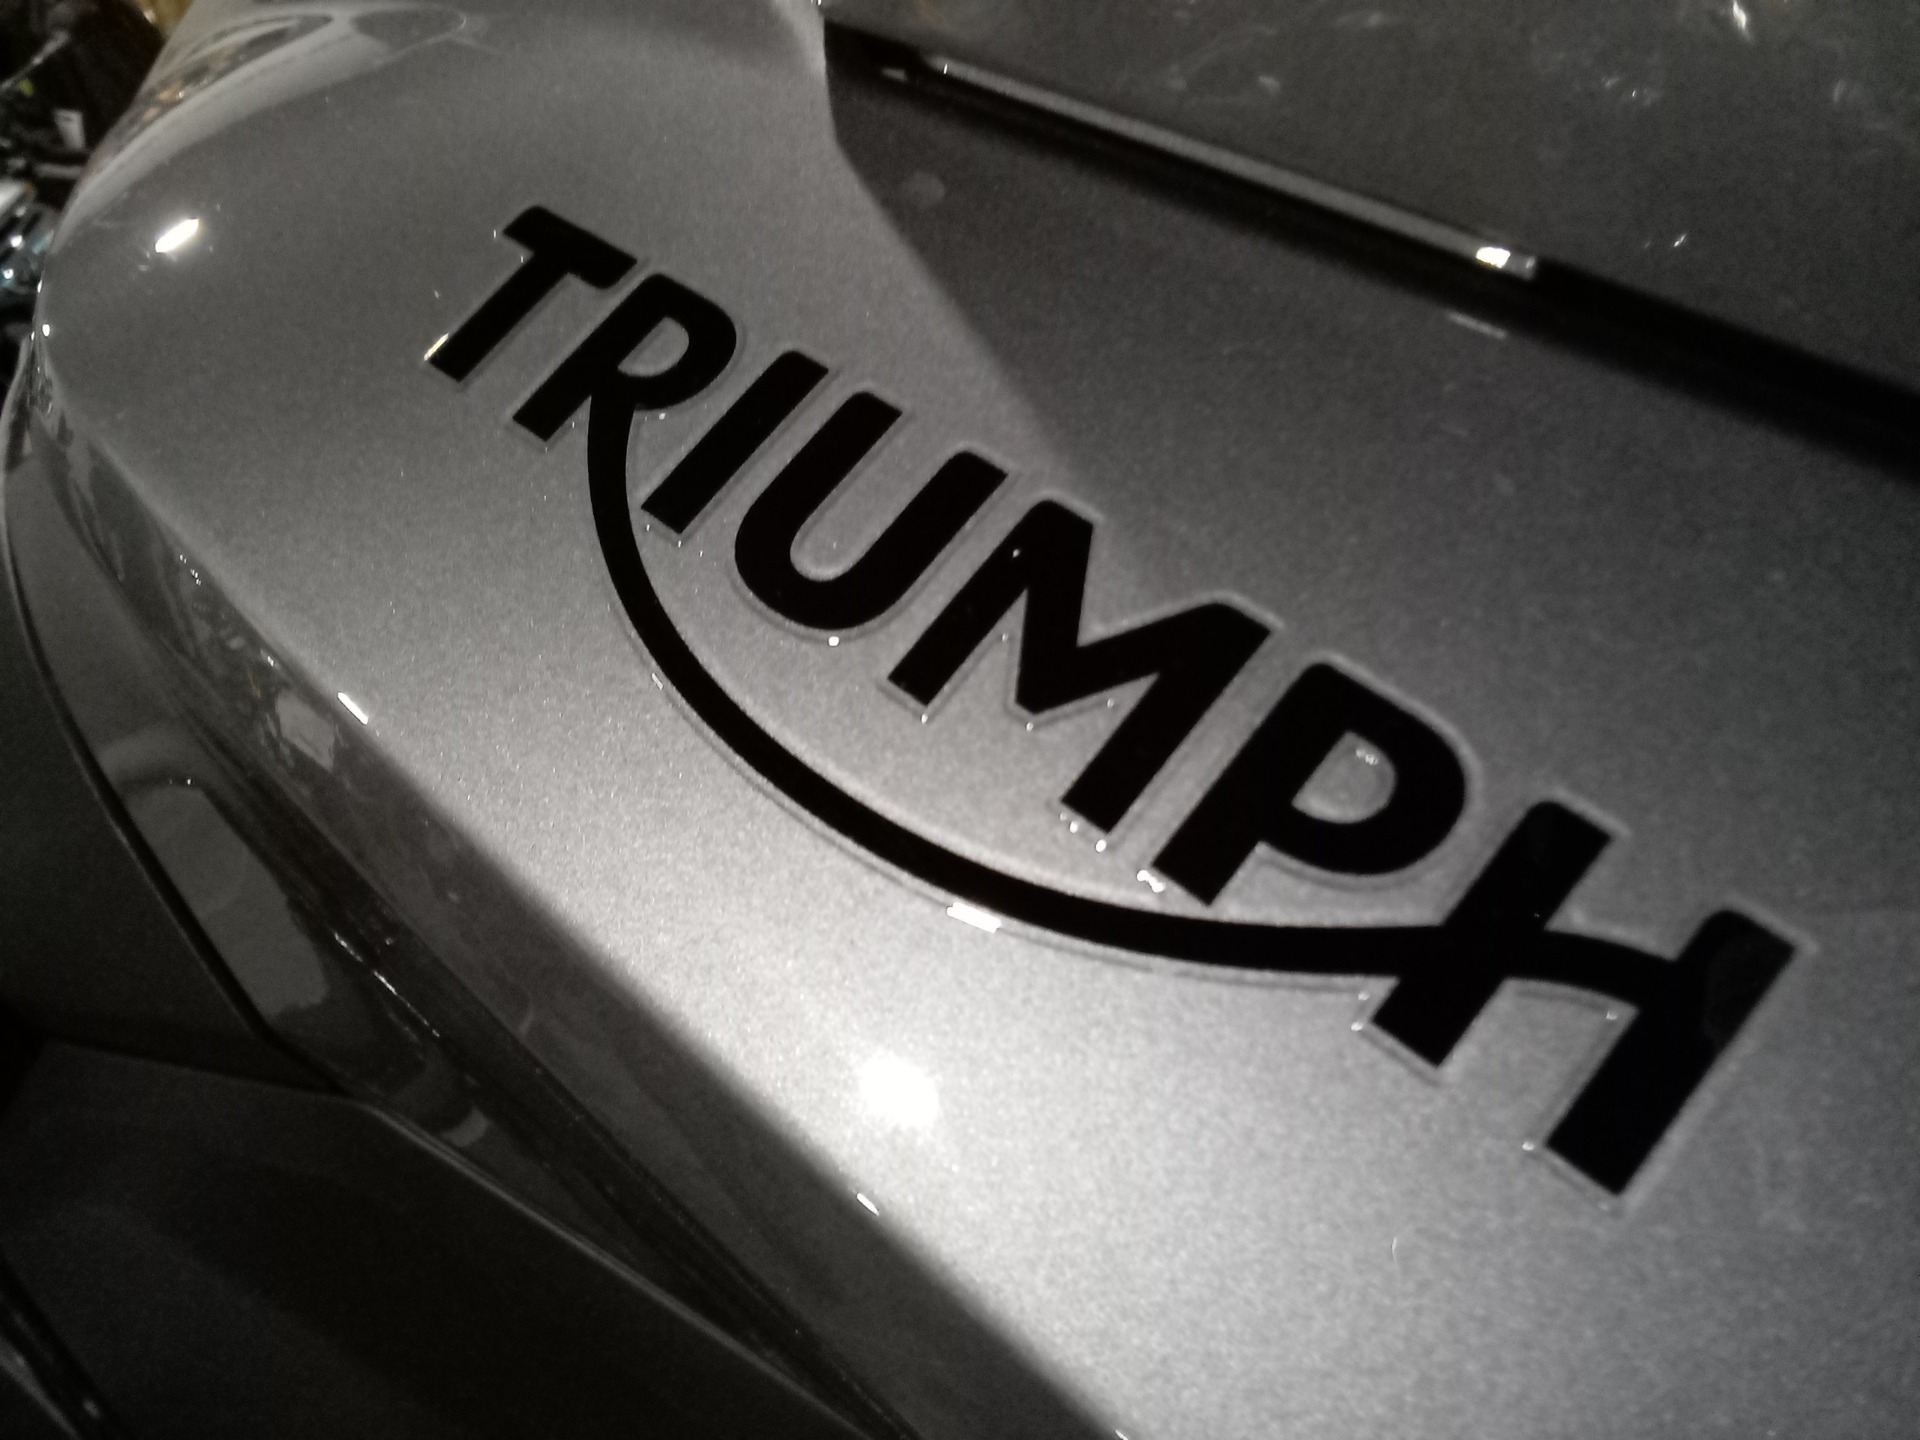 2023 Triumph Tiger Sport 660 in Mooresville, North Carolina - Photo 5